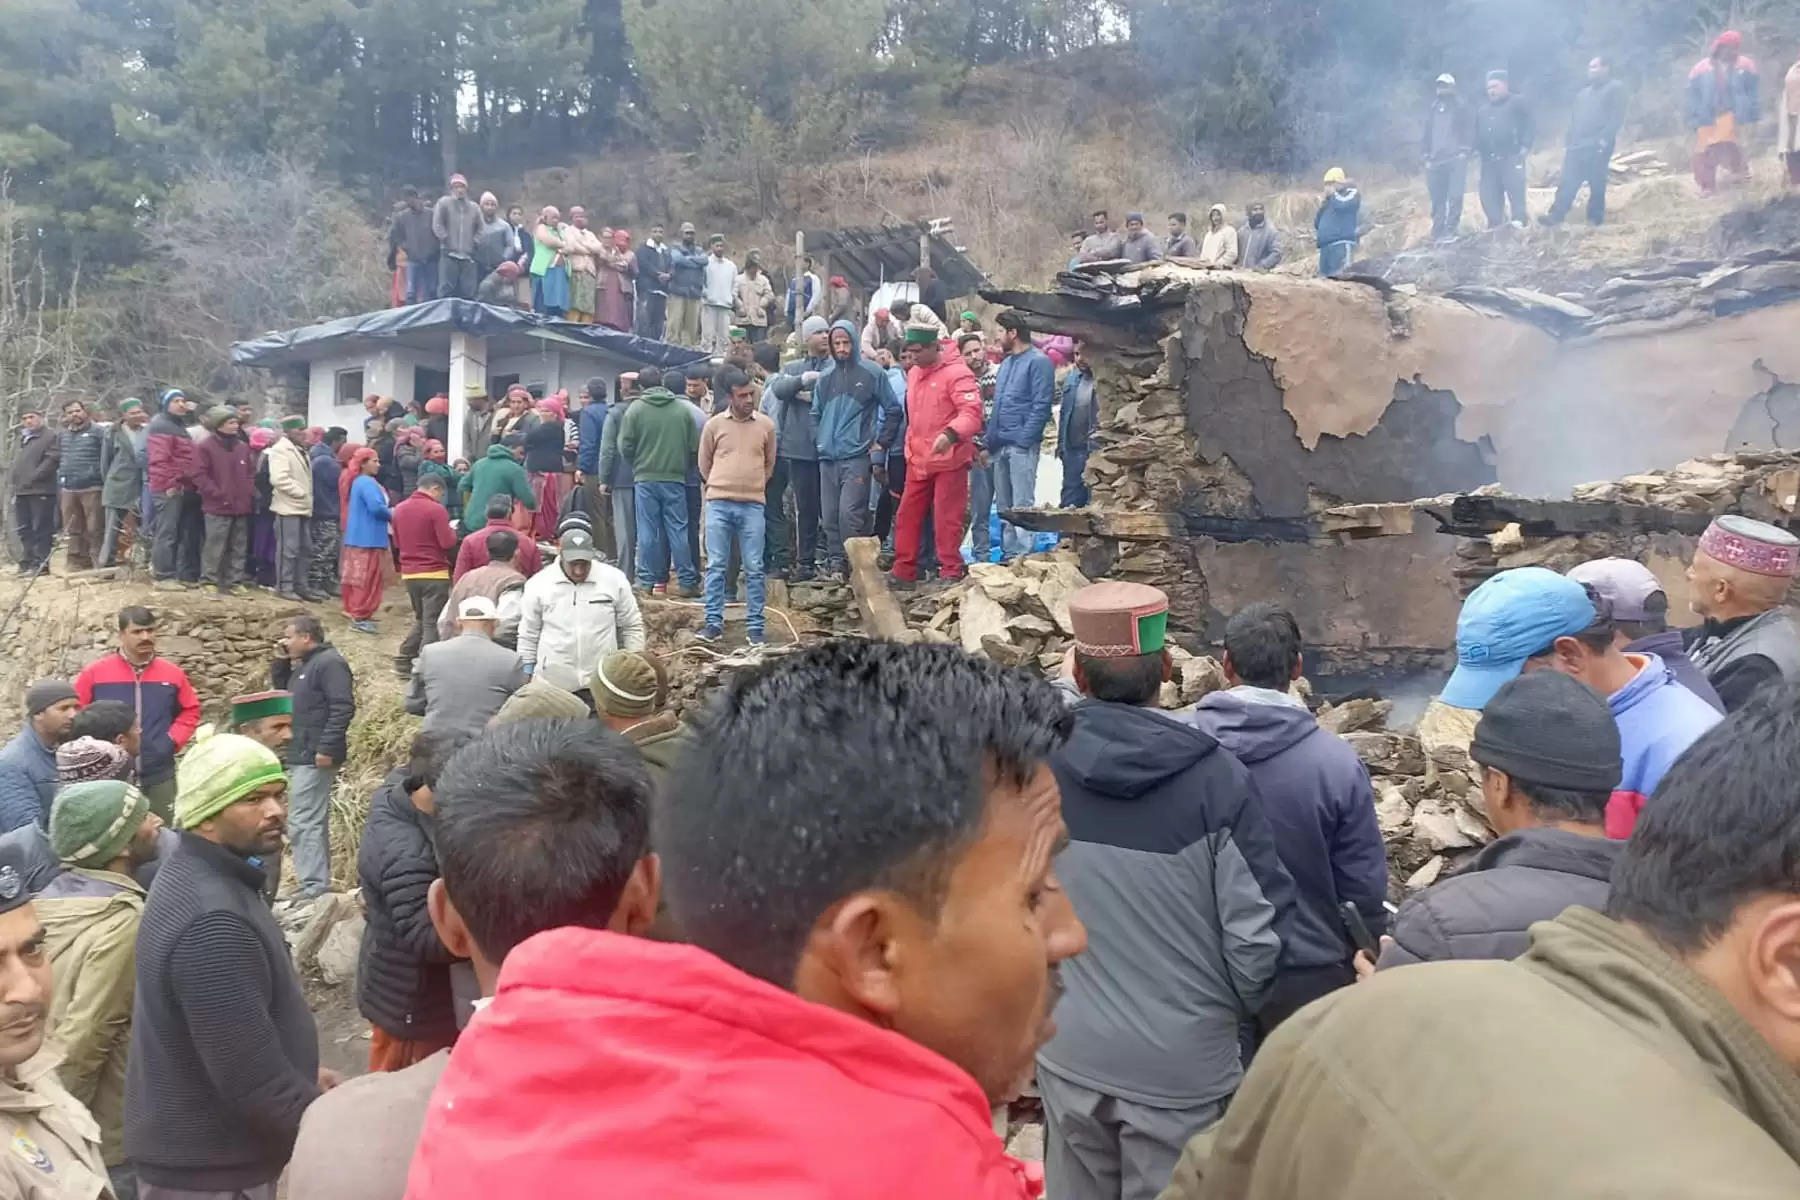 हिमाचल प्रदेश के रामपुर में दो मंजिला मकान में आग लगने से बुजुर्ग महिला जिंदा जल गई। मिली जानकारी के मुताबिक खलटी गांव में यह घटना हुई है। सराहन उपतहसील की शाहधार पंचायत के खलटी गांव में रविवार देर रात अचानक भीषण आग लग गई। भीषण अग्निकांड में एक बुर्जुग महिला जिंदा जल गई औ दो मंजिला मकान भी आग कर भेंट चढ़ गया।